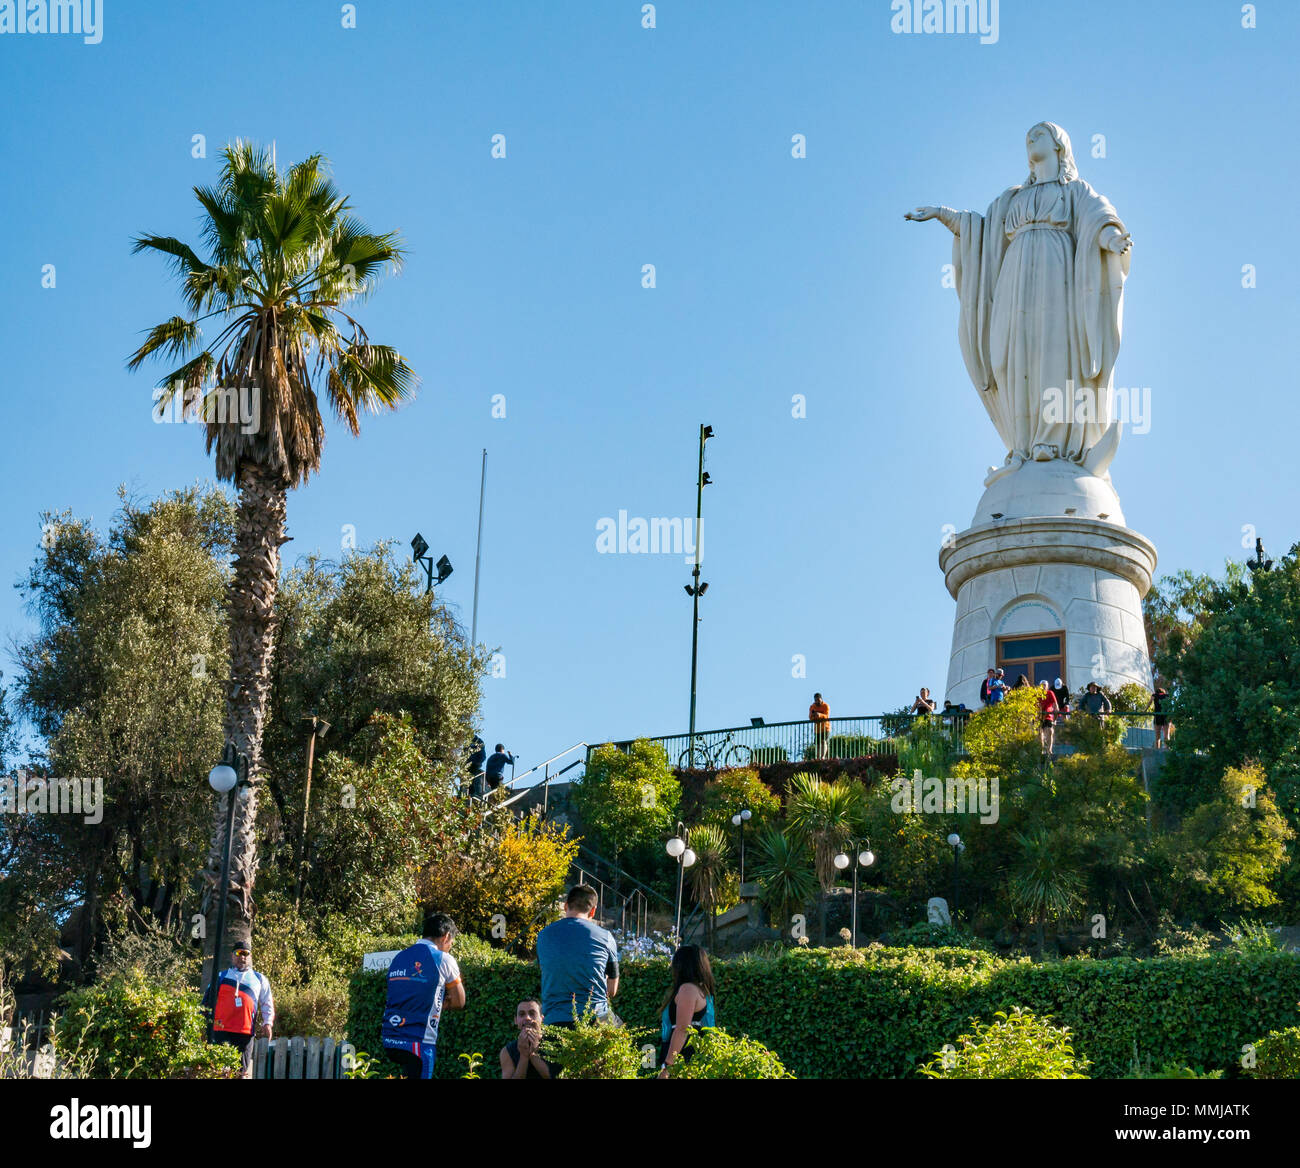 Les gens le dimanche de Pâques, Vierge de l'Immaculée Conception statue, haut de colline de San Cristobal, Santiago, Chili, le dimanche de Pâques Banque D'Images